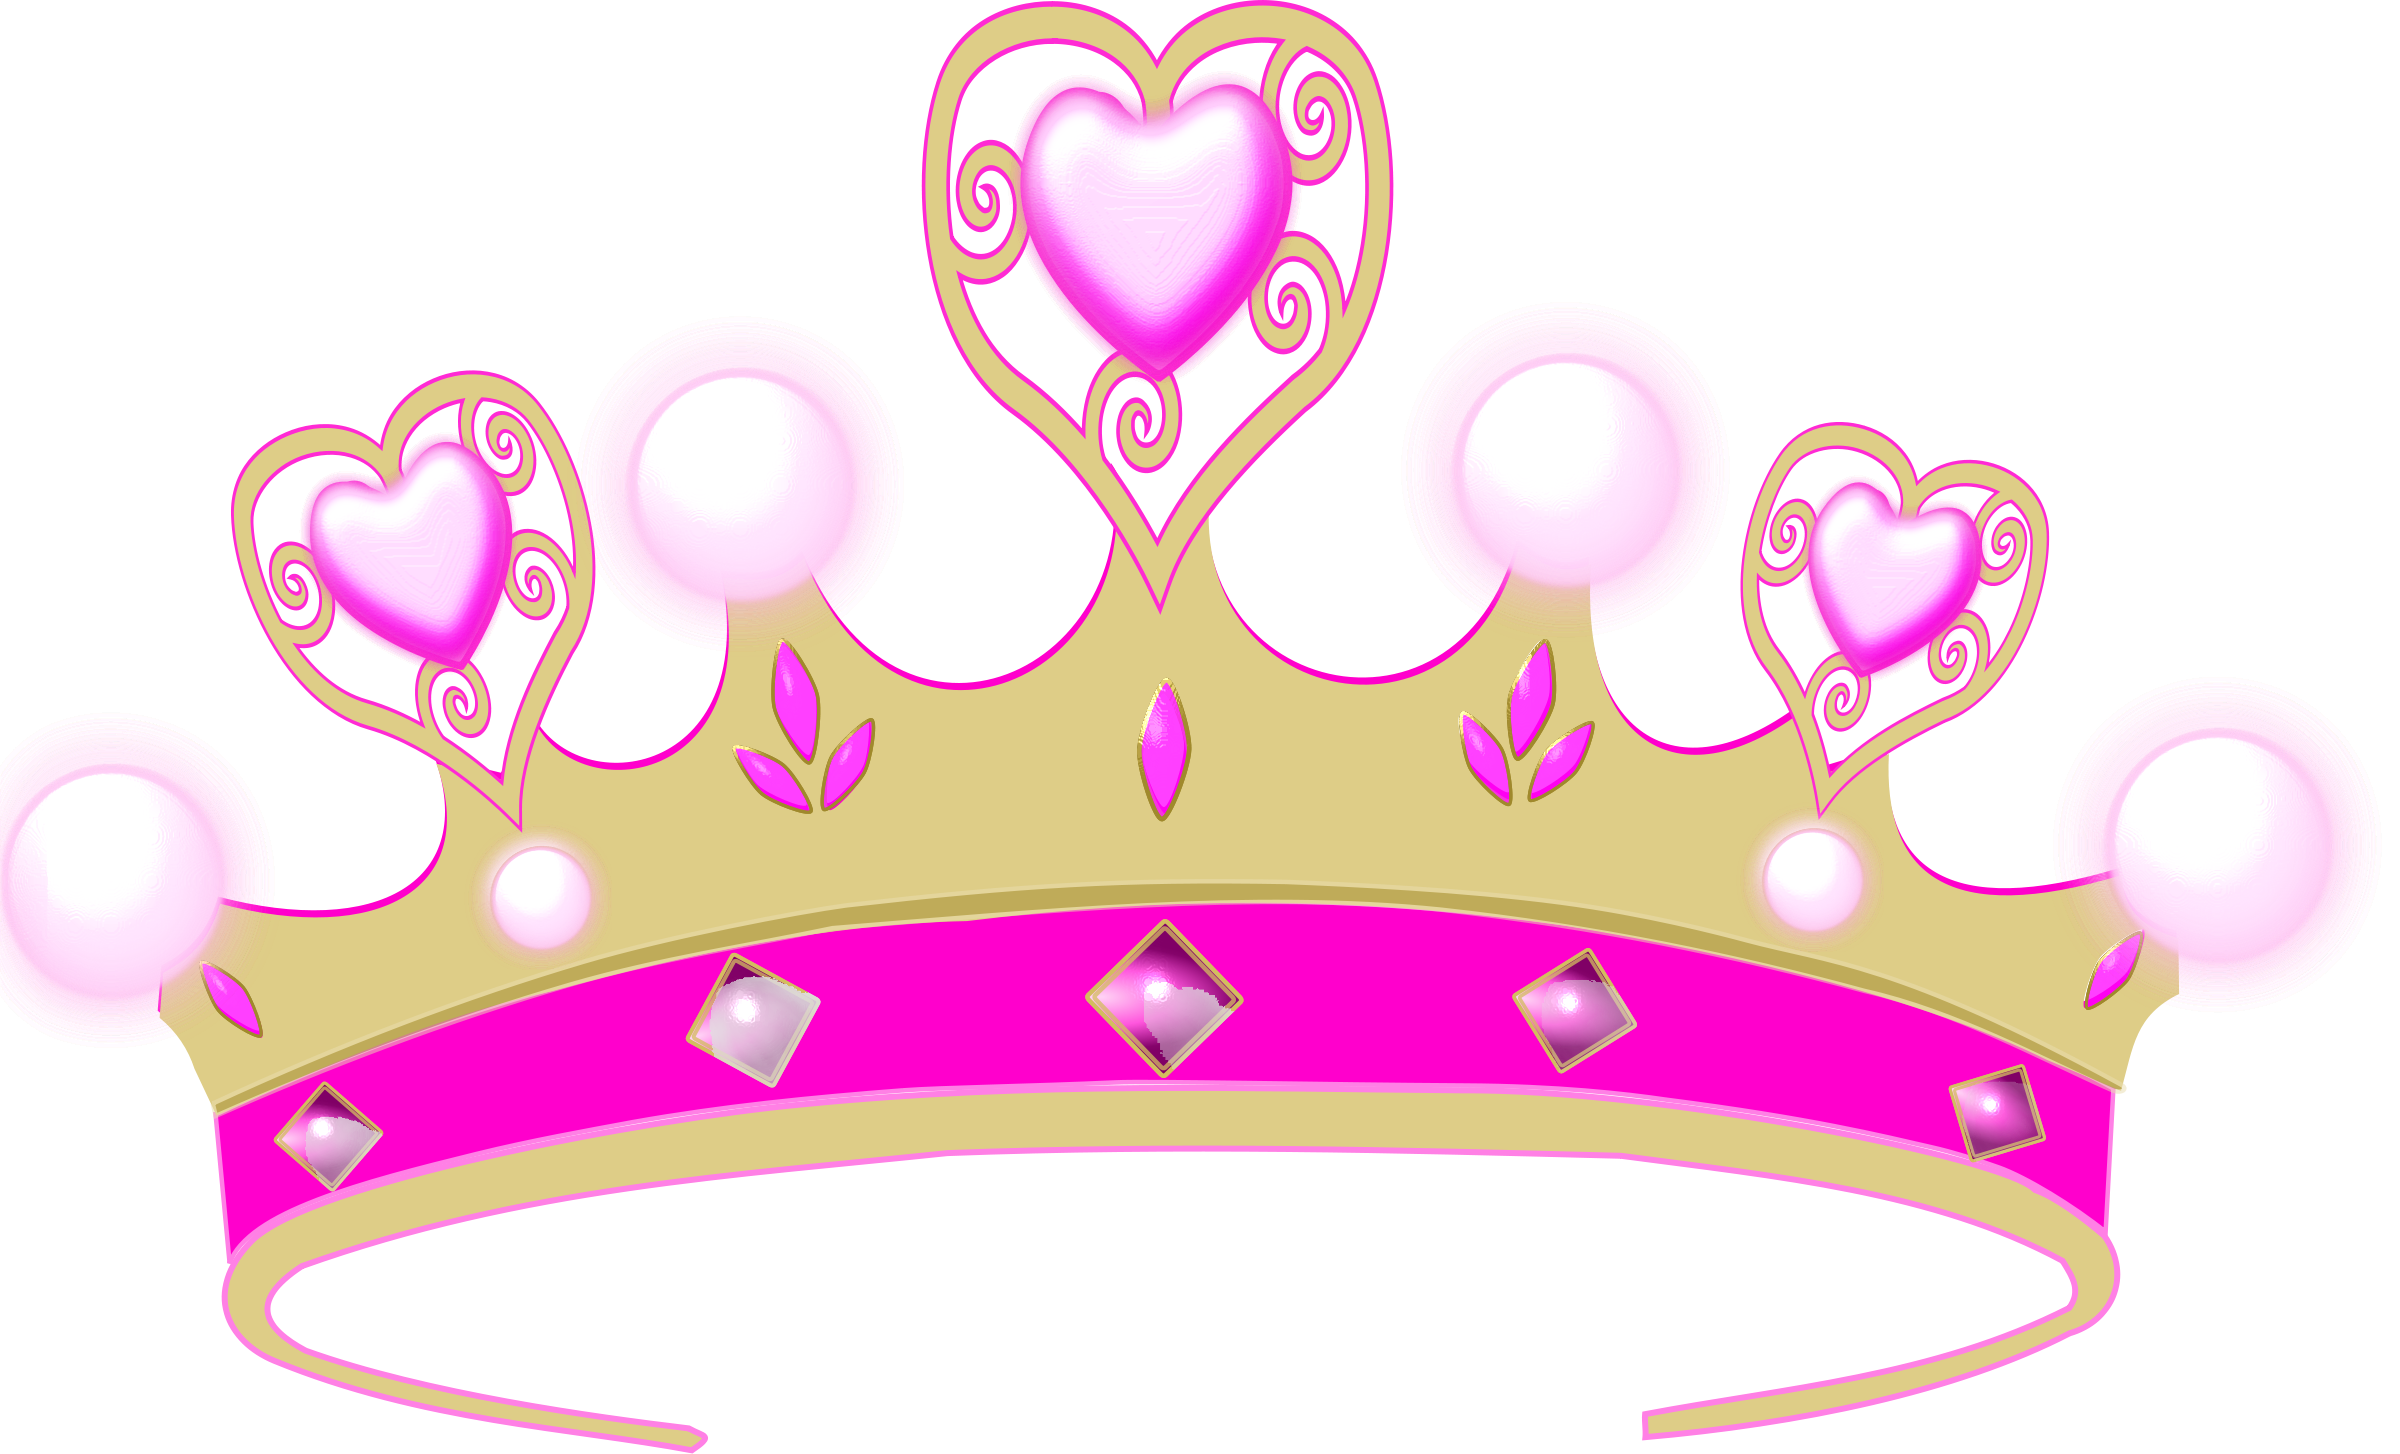 Crown princess tiara.